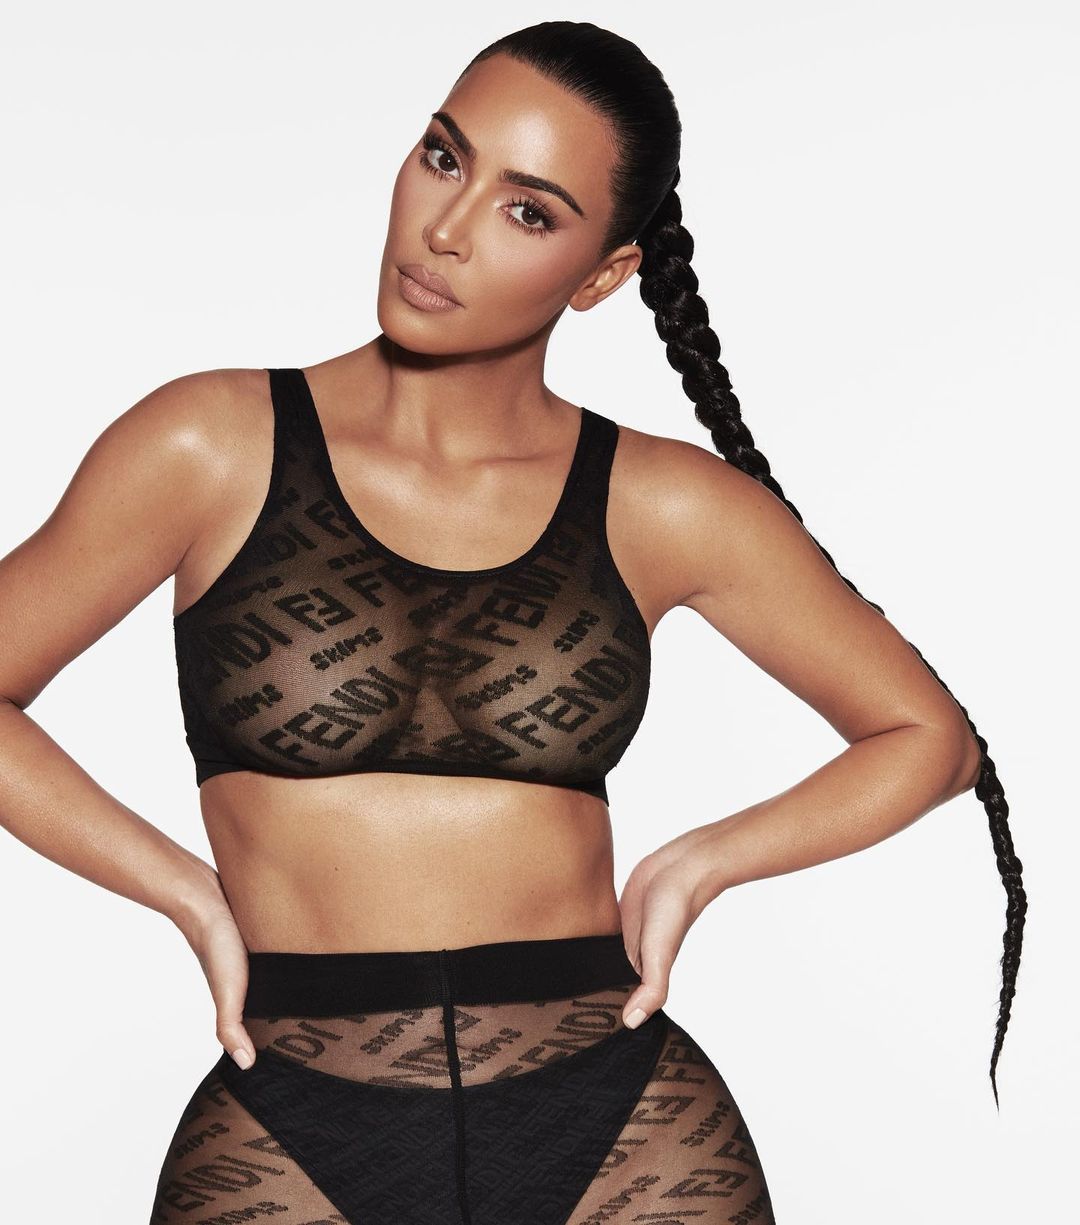 Kim Kardashian FENDI x SKIMS Instagram Sizzling Promoshoot 2021